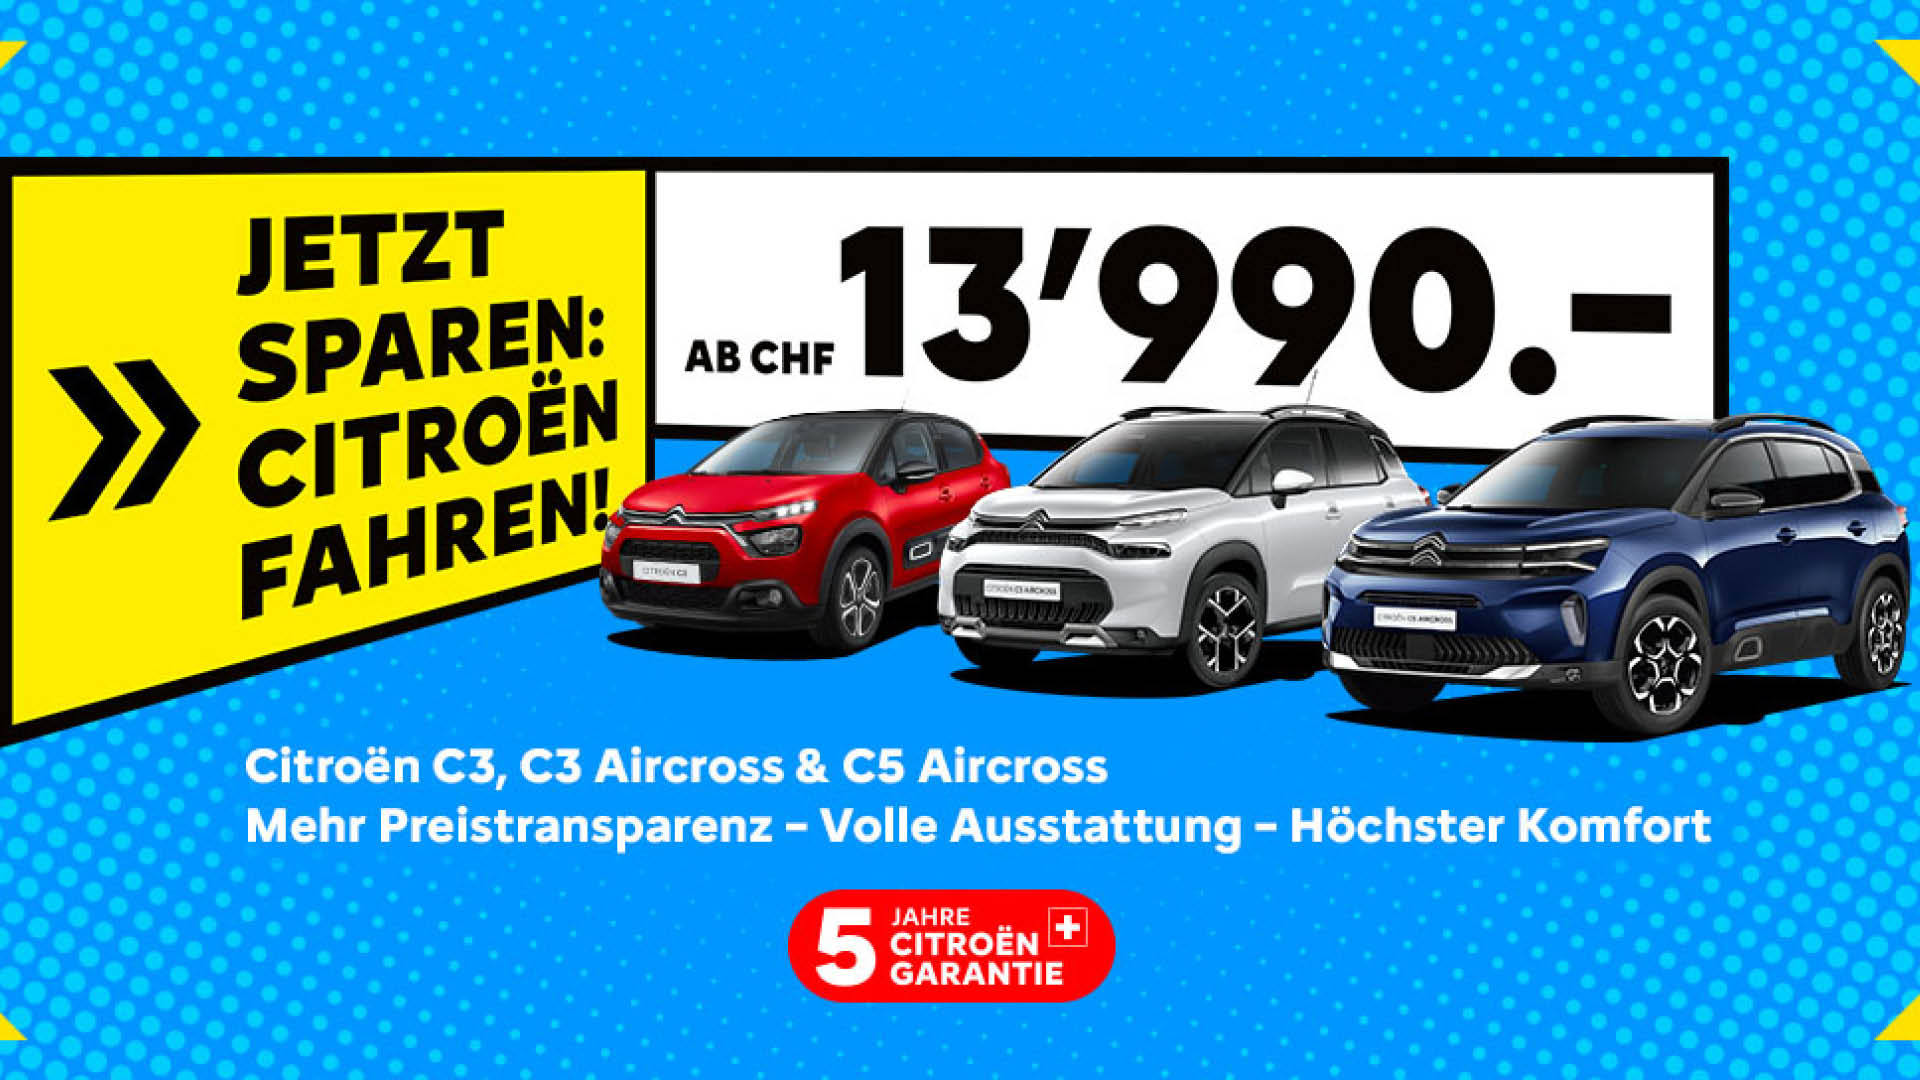 Jetzt sparen Citroën C3, C3 AC und C5 AC fahren!